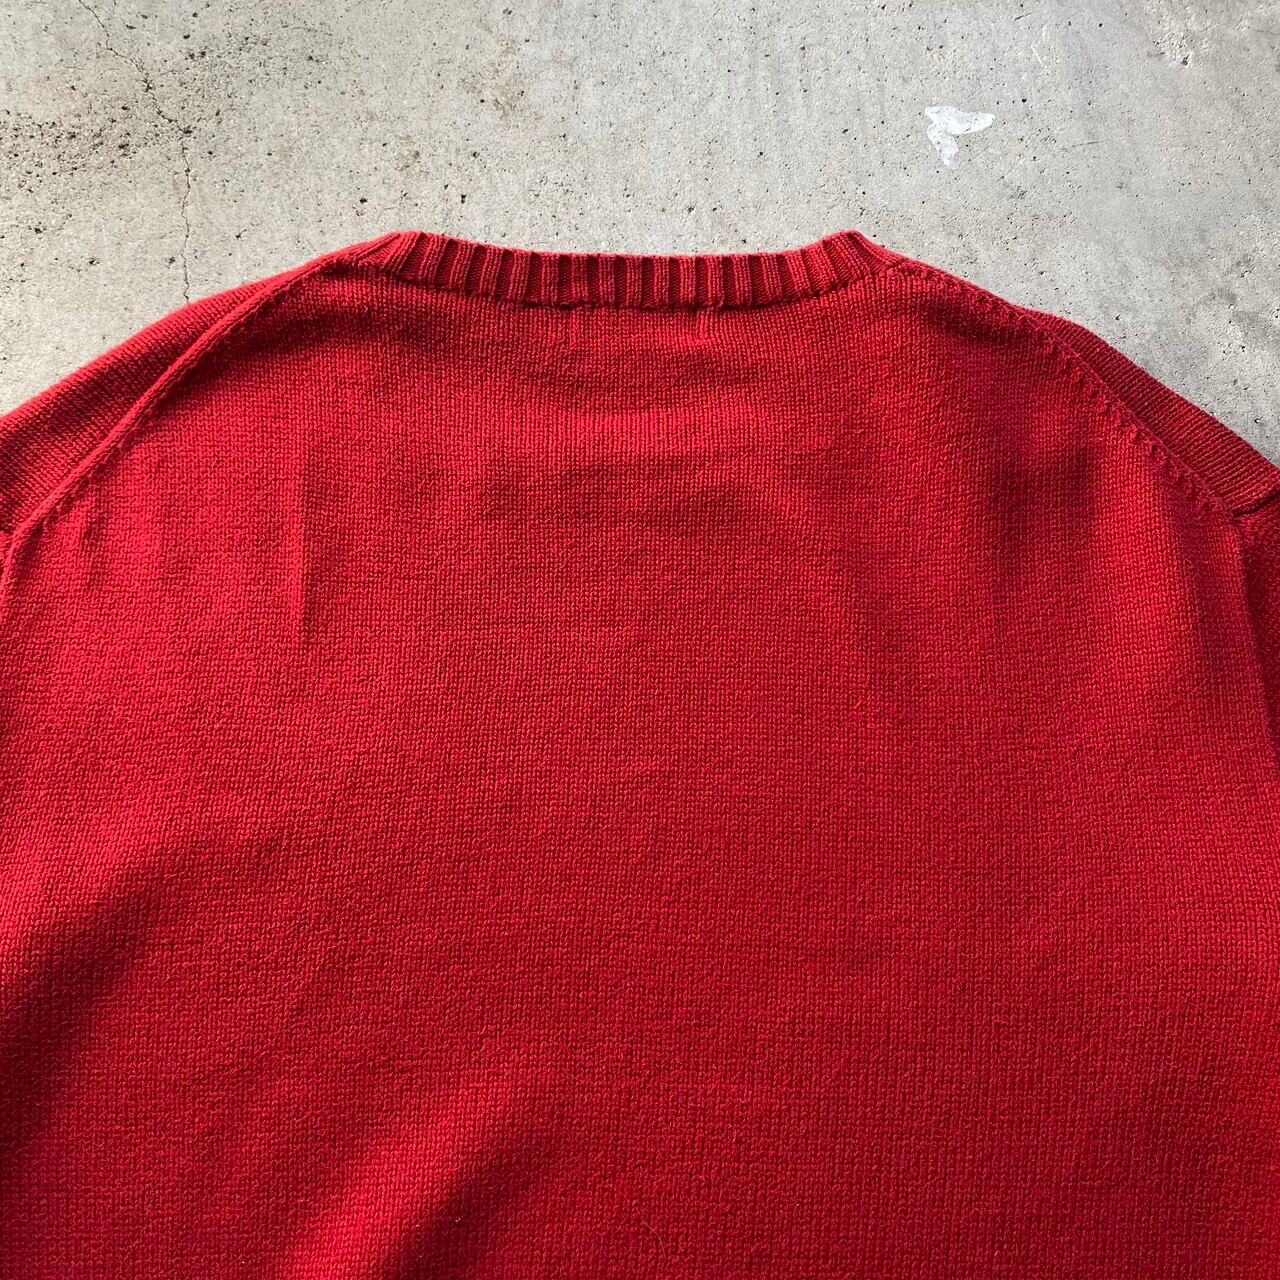 【美品】XLサイズ ローレンラルフローレン 赤ニット ドッキング シャツ